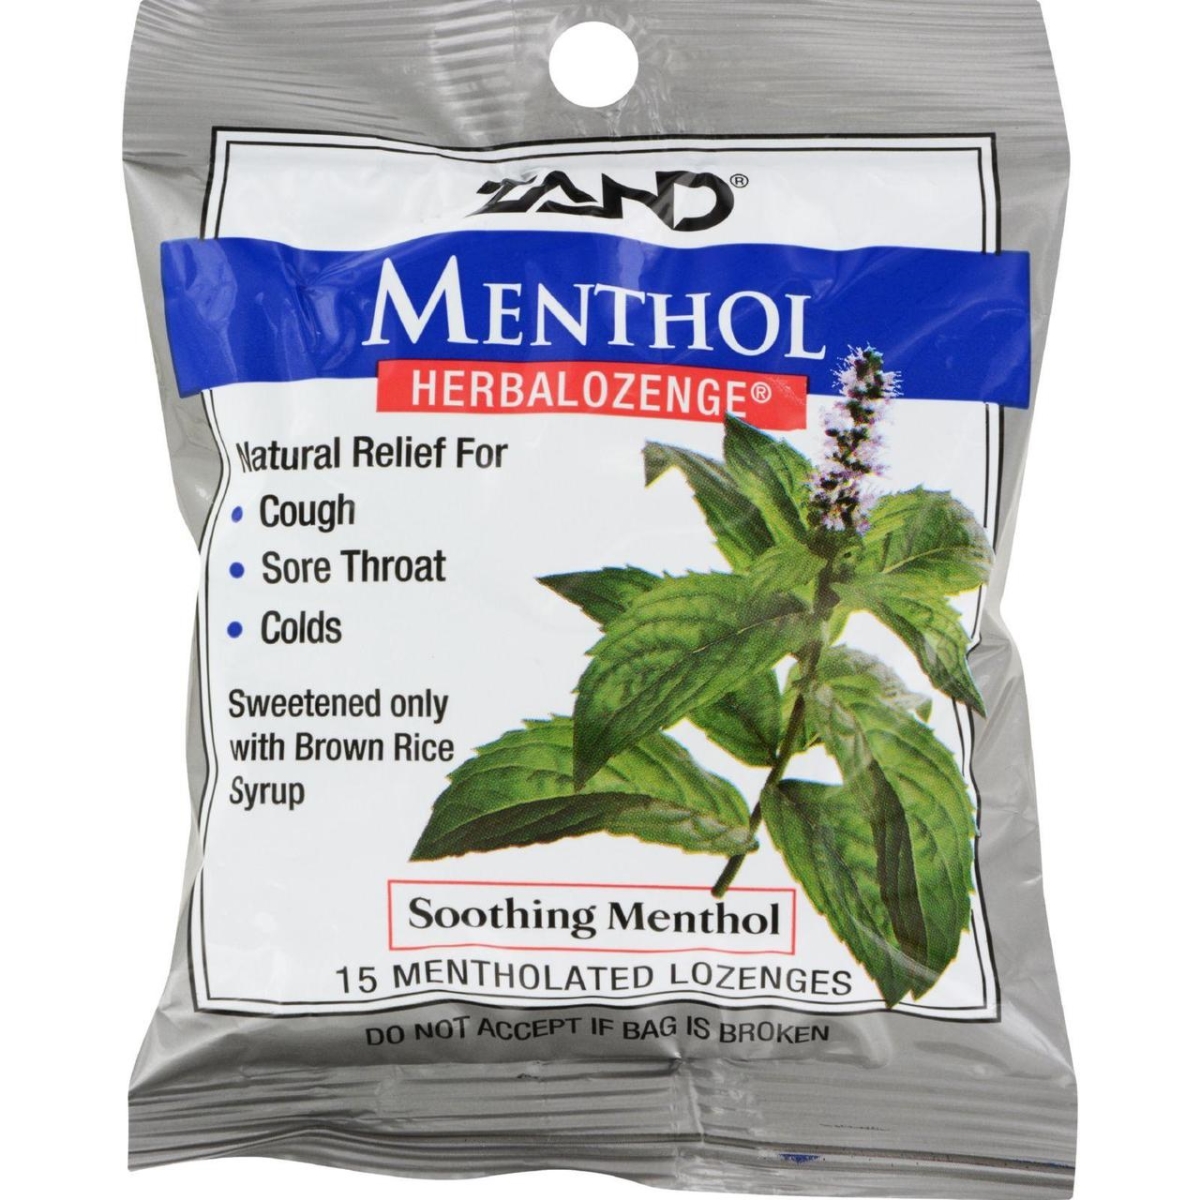 Hg0978247 Menthol Herbalozenge Soothing Menthol, 15 Lozenges - Case Of 12